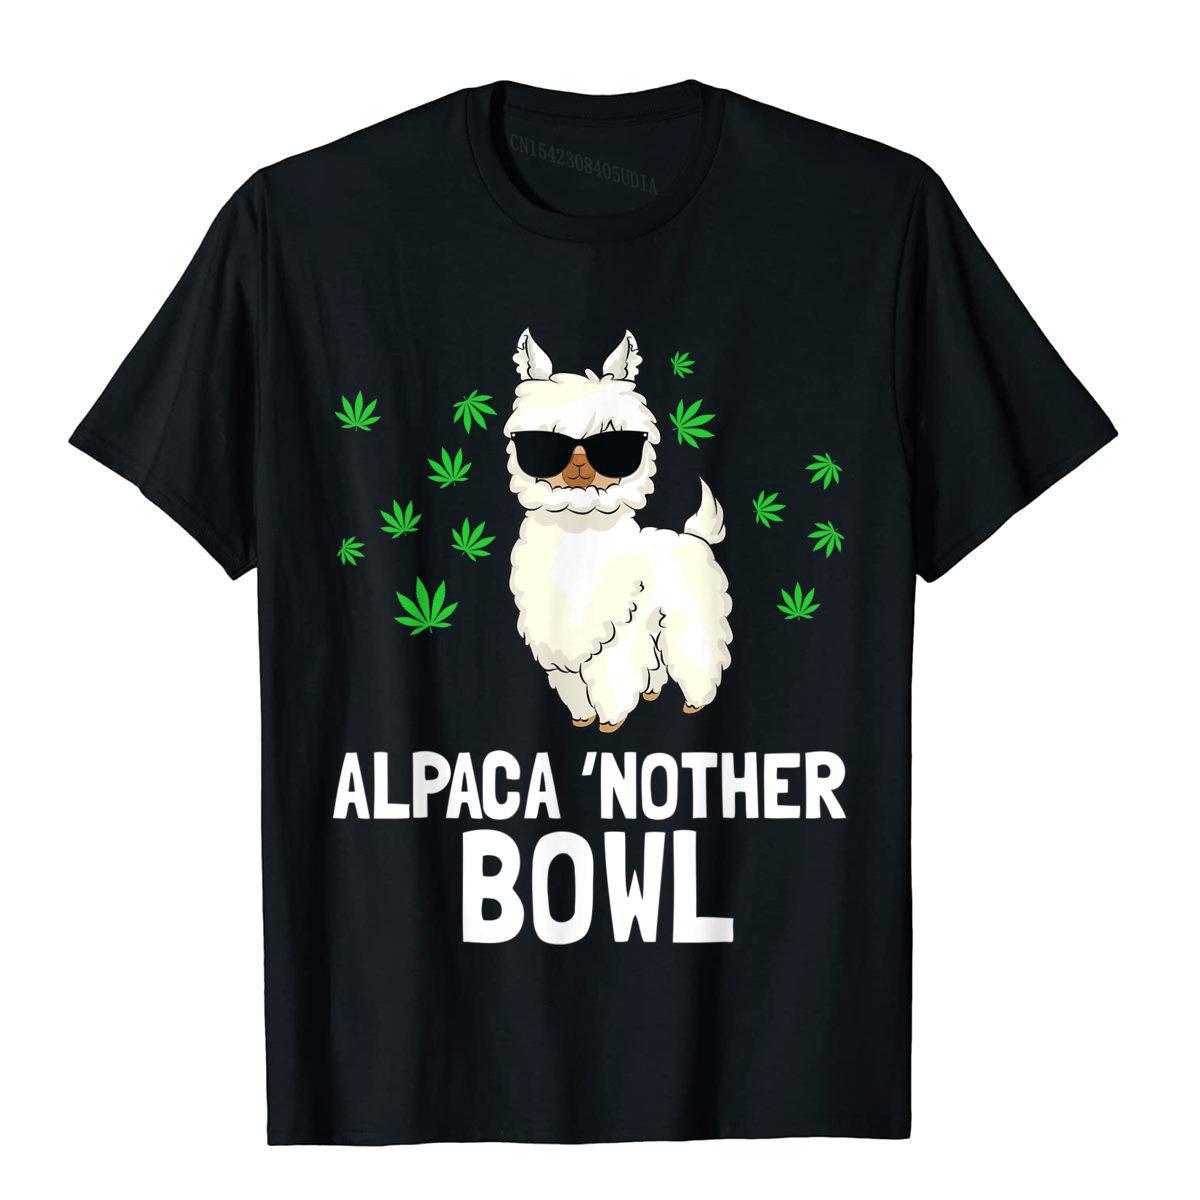 Alpaca 'Nother Bowl Funny Marijuana T-Shirt